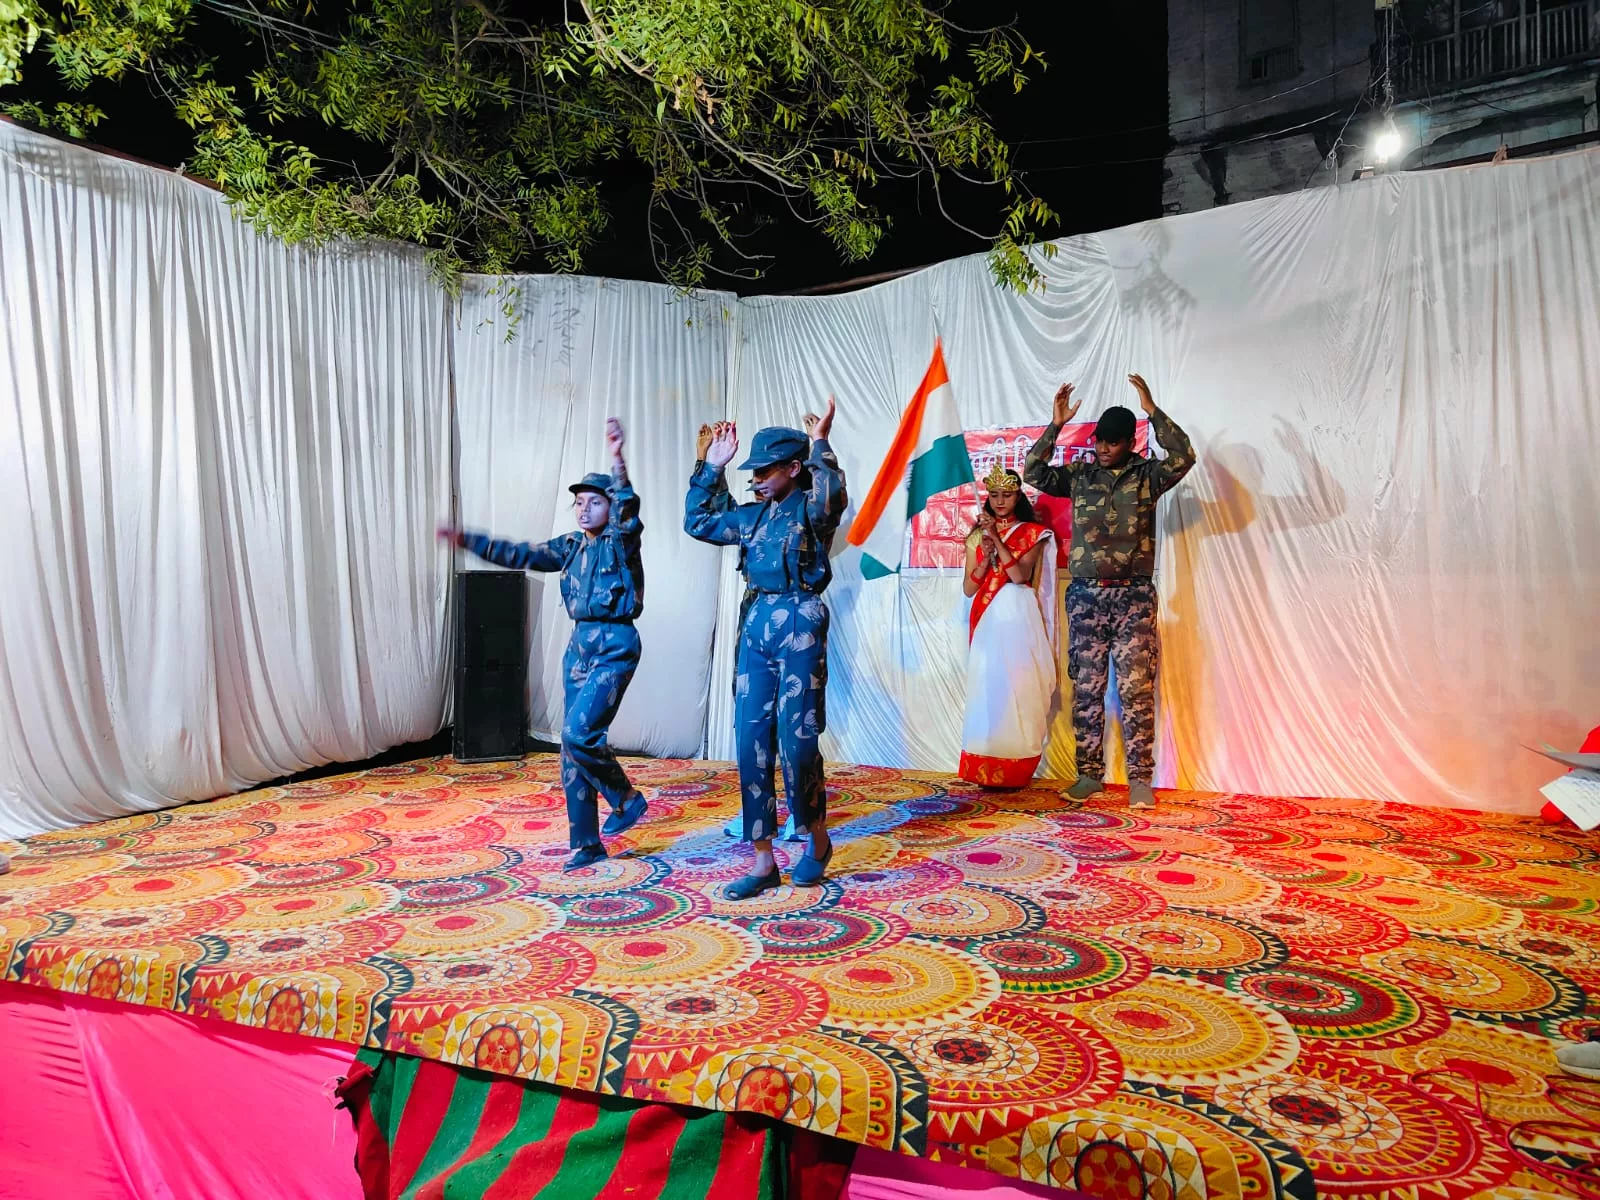 सरस्वती शिशु मंदिर के नन्हें मुन्ने बच्चों ने दी रंगारंग प्रस्तुतियां | New India Times